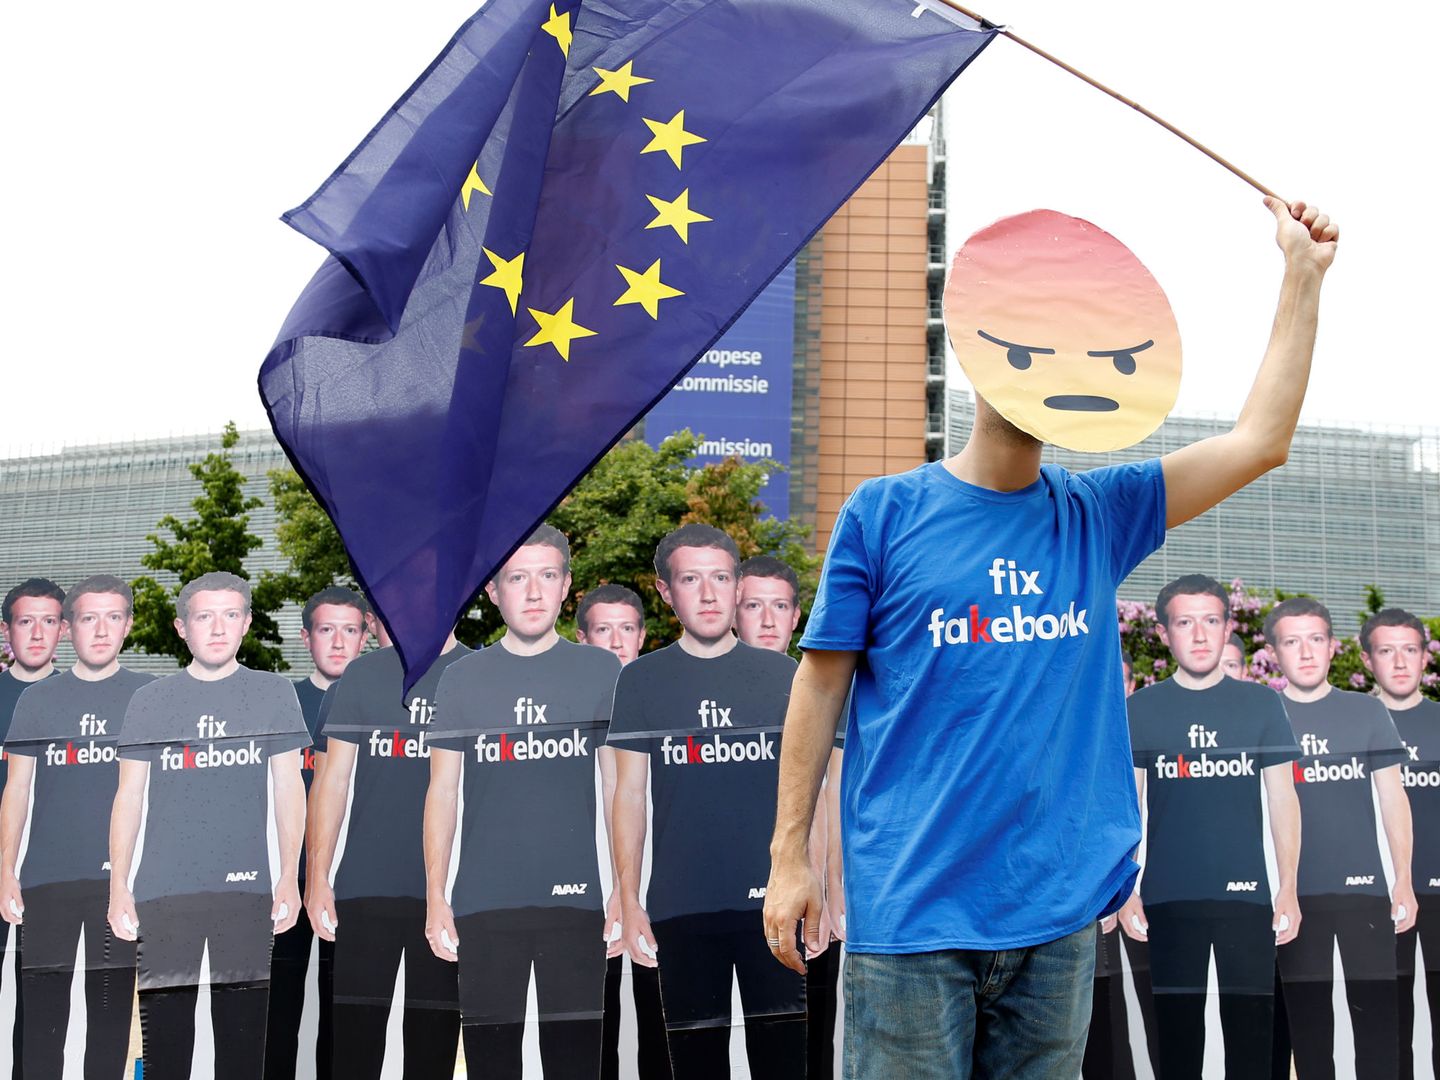 Protesta contra el fundador de Facebook en Bruselas (Reuters)